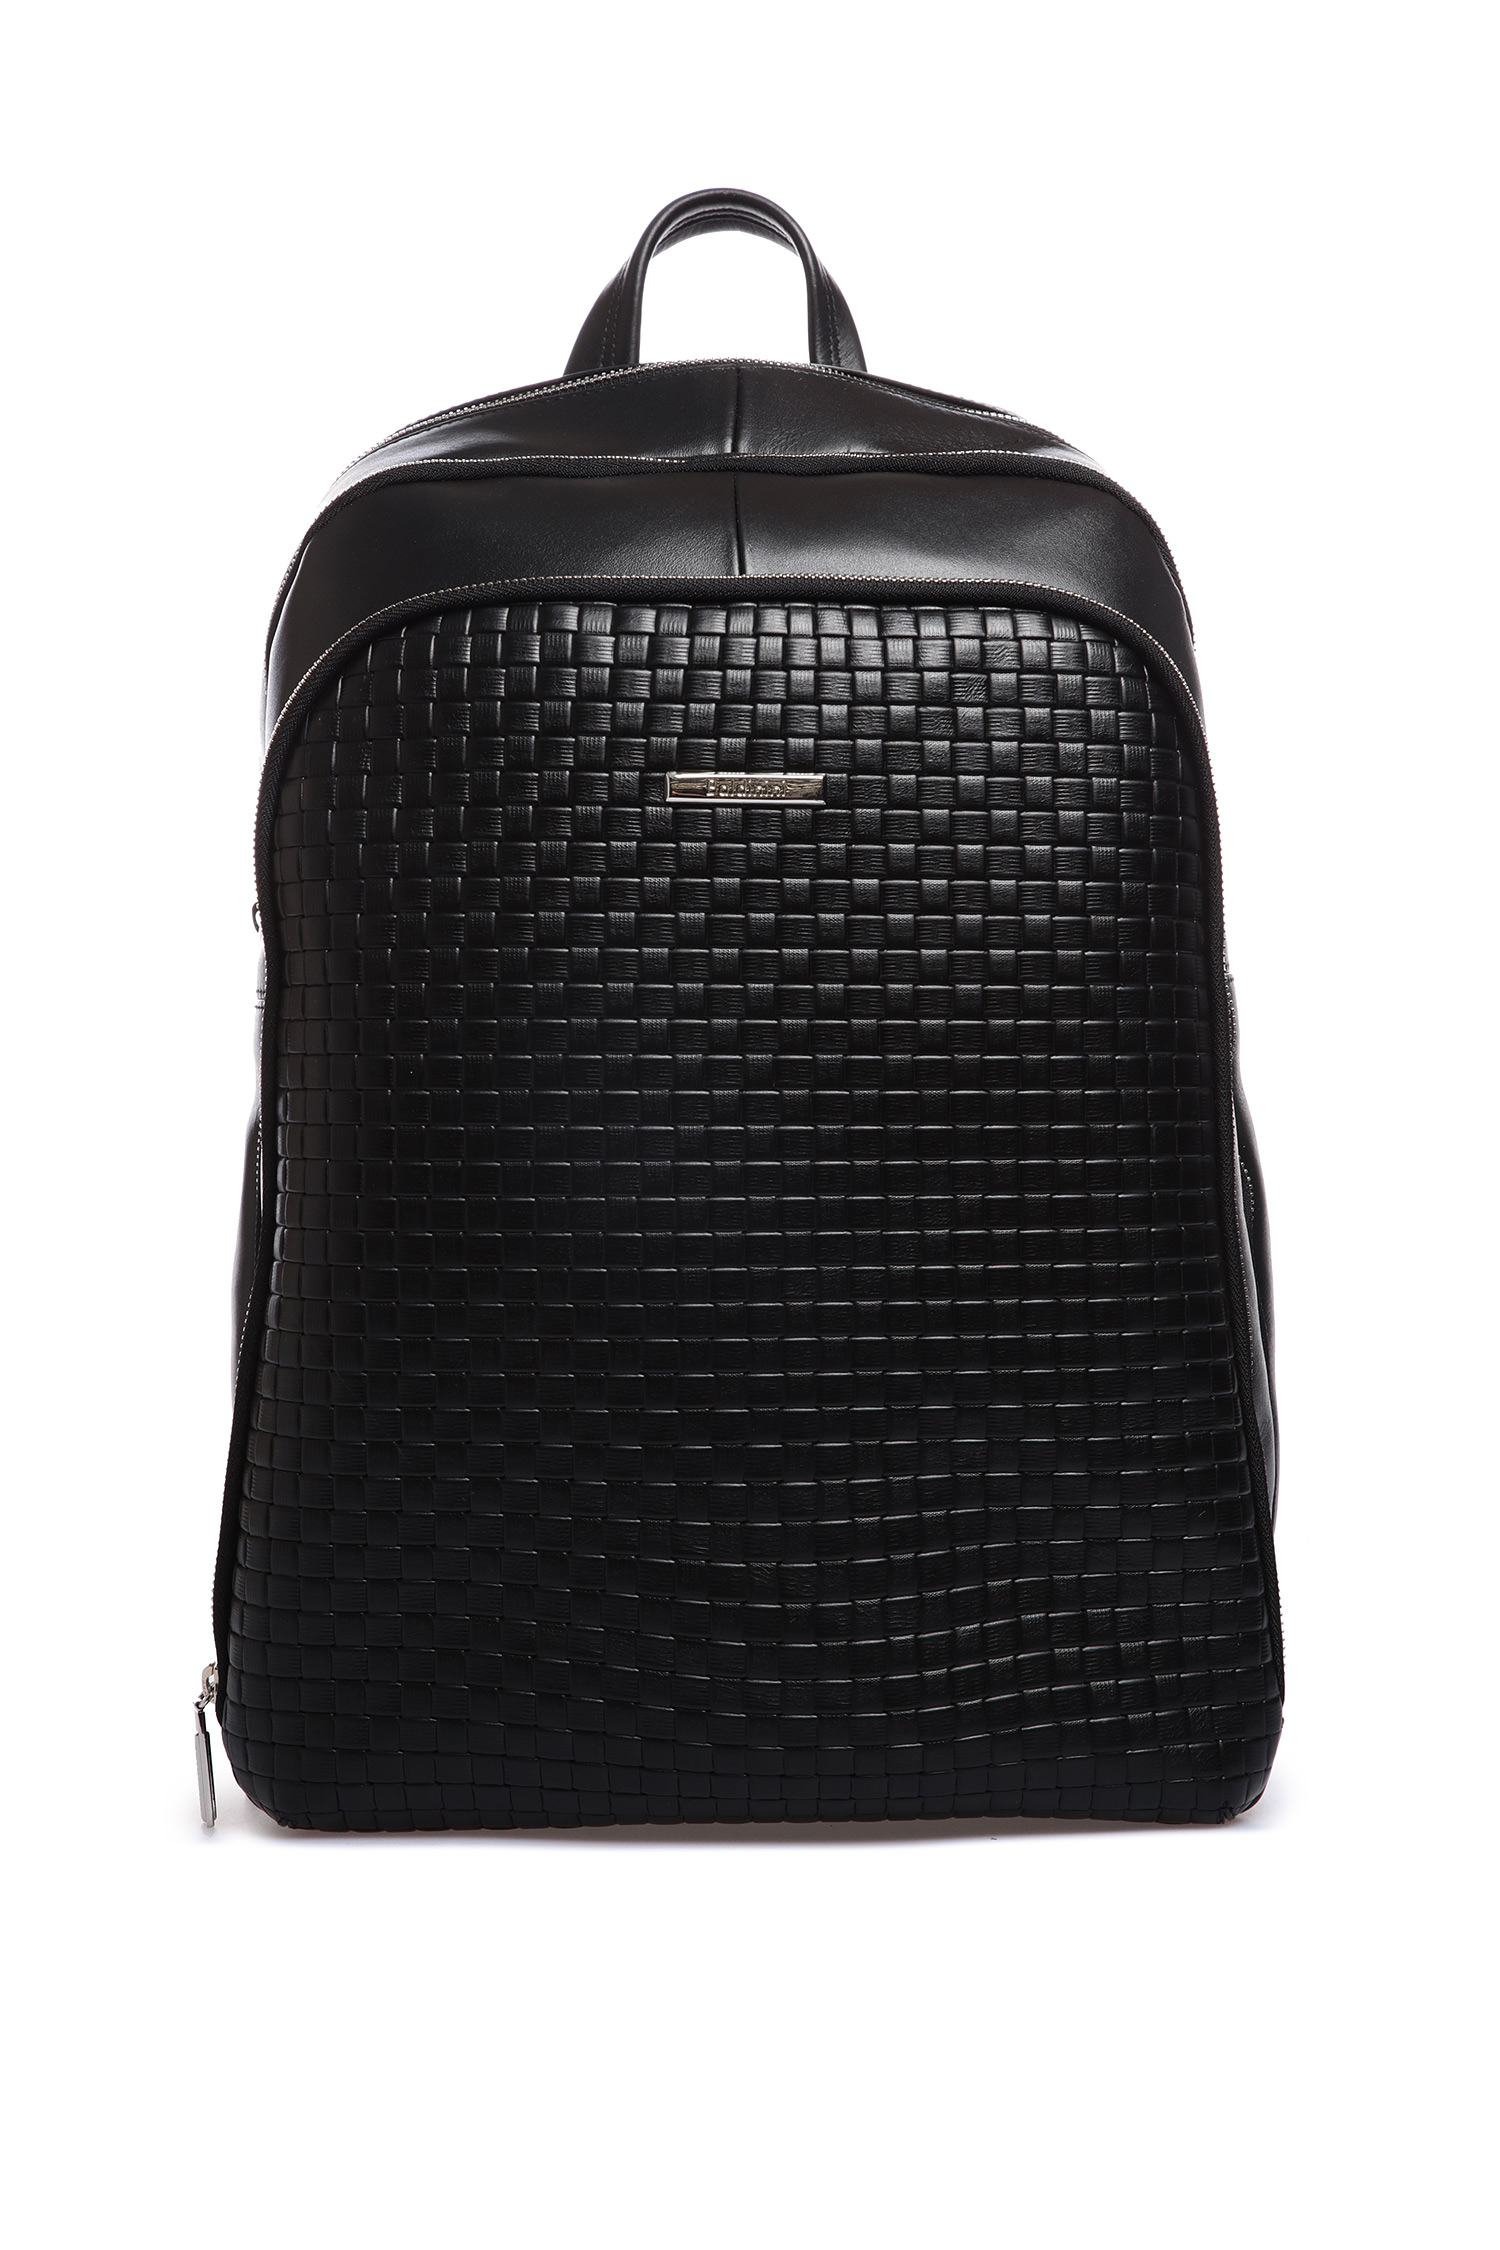 Черный кожаный рюкзак для парней Baldinini CA0019;00